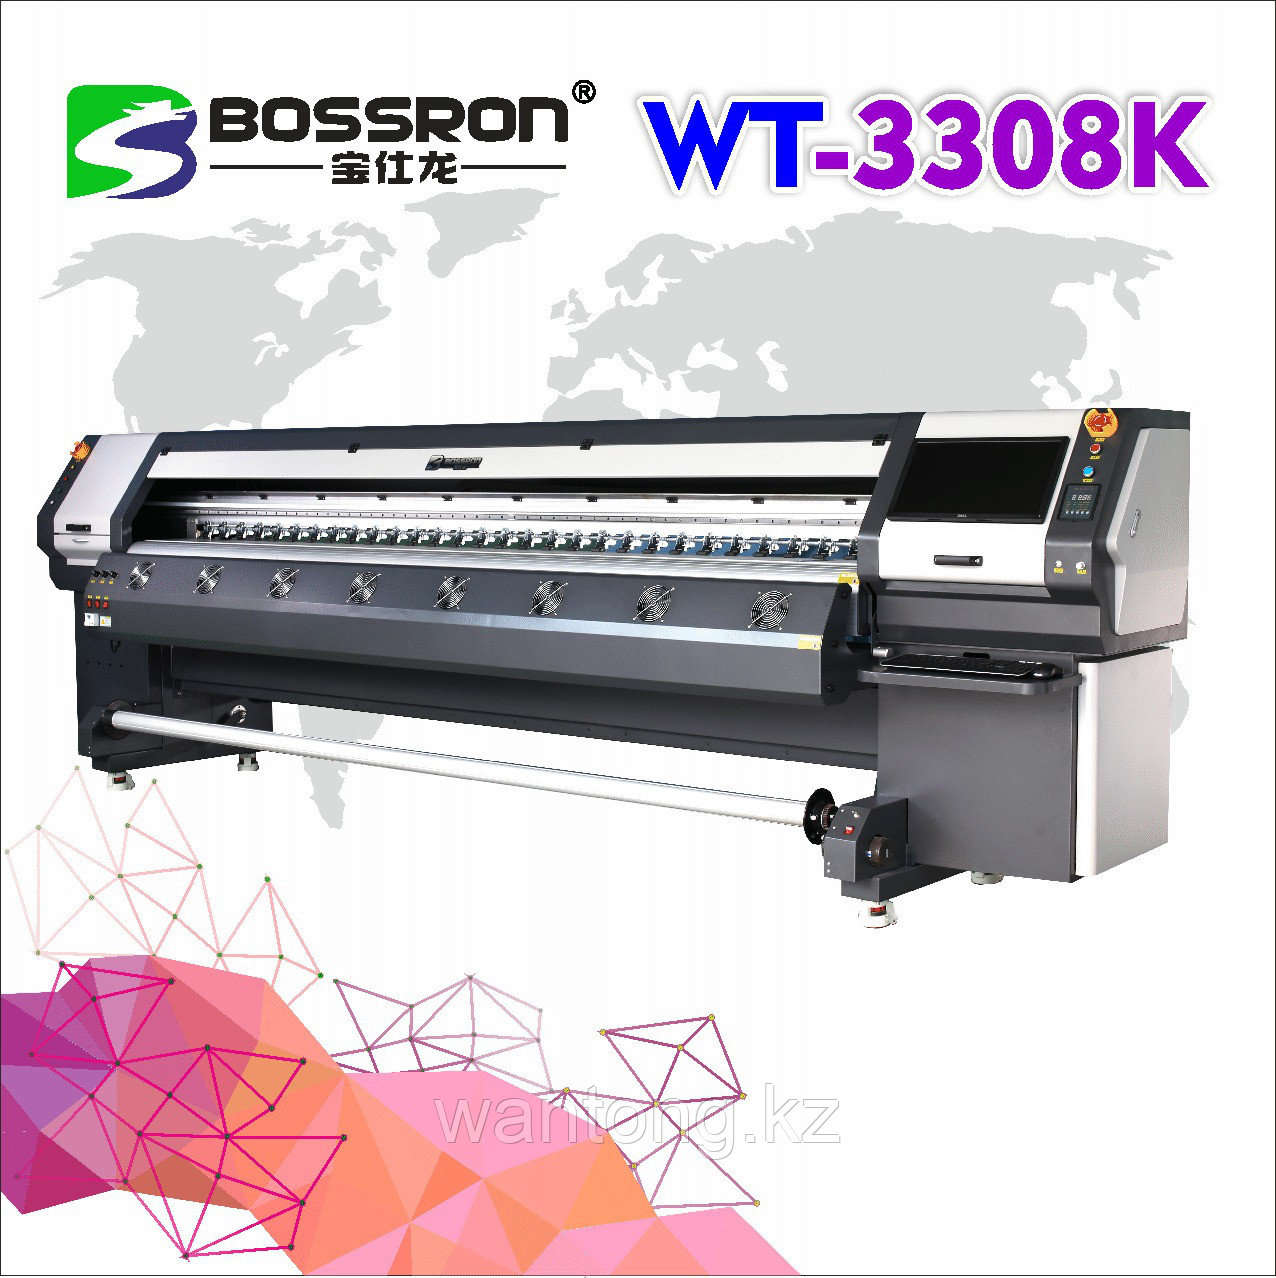 Широкоформатный сольвентный принтер WT-3308K, фото 1